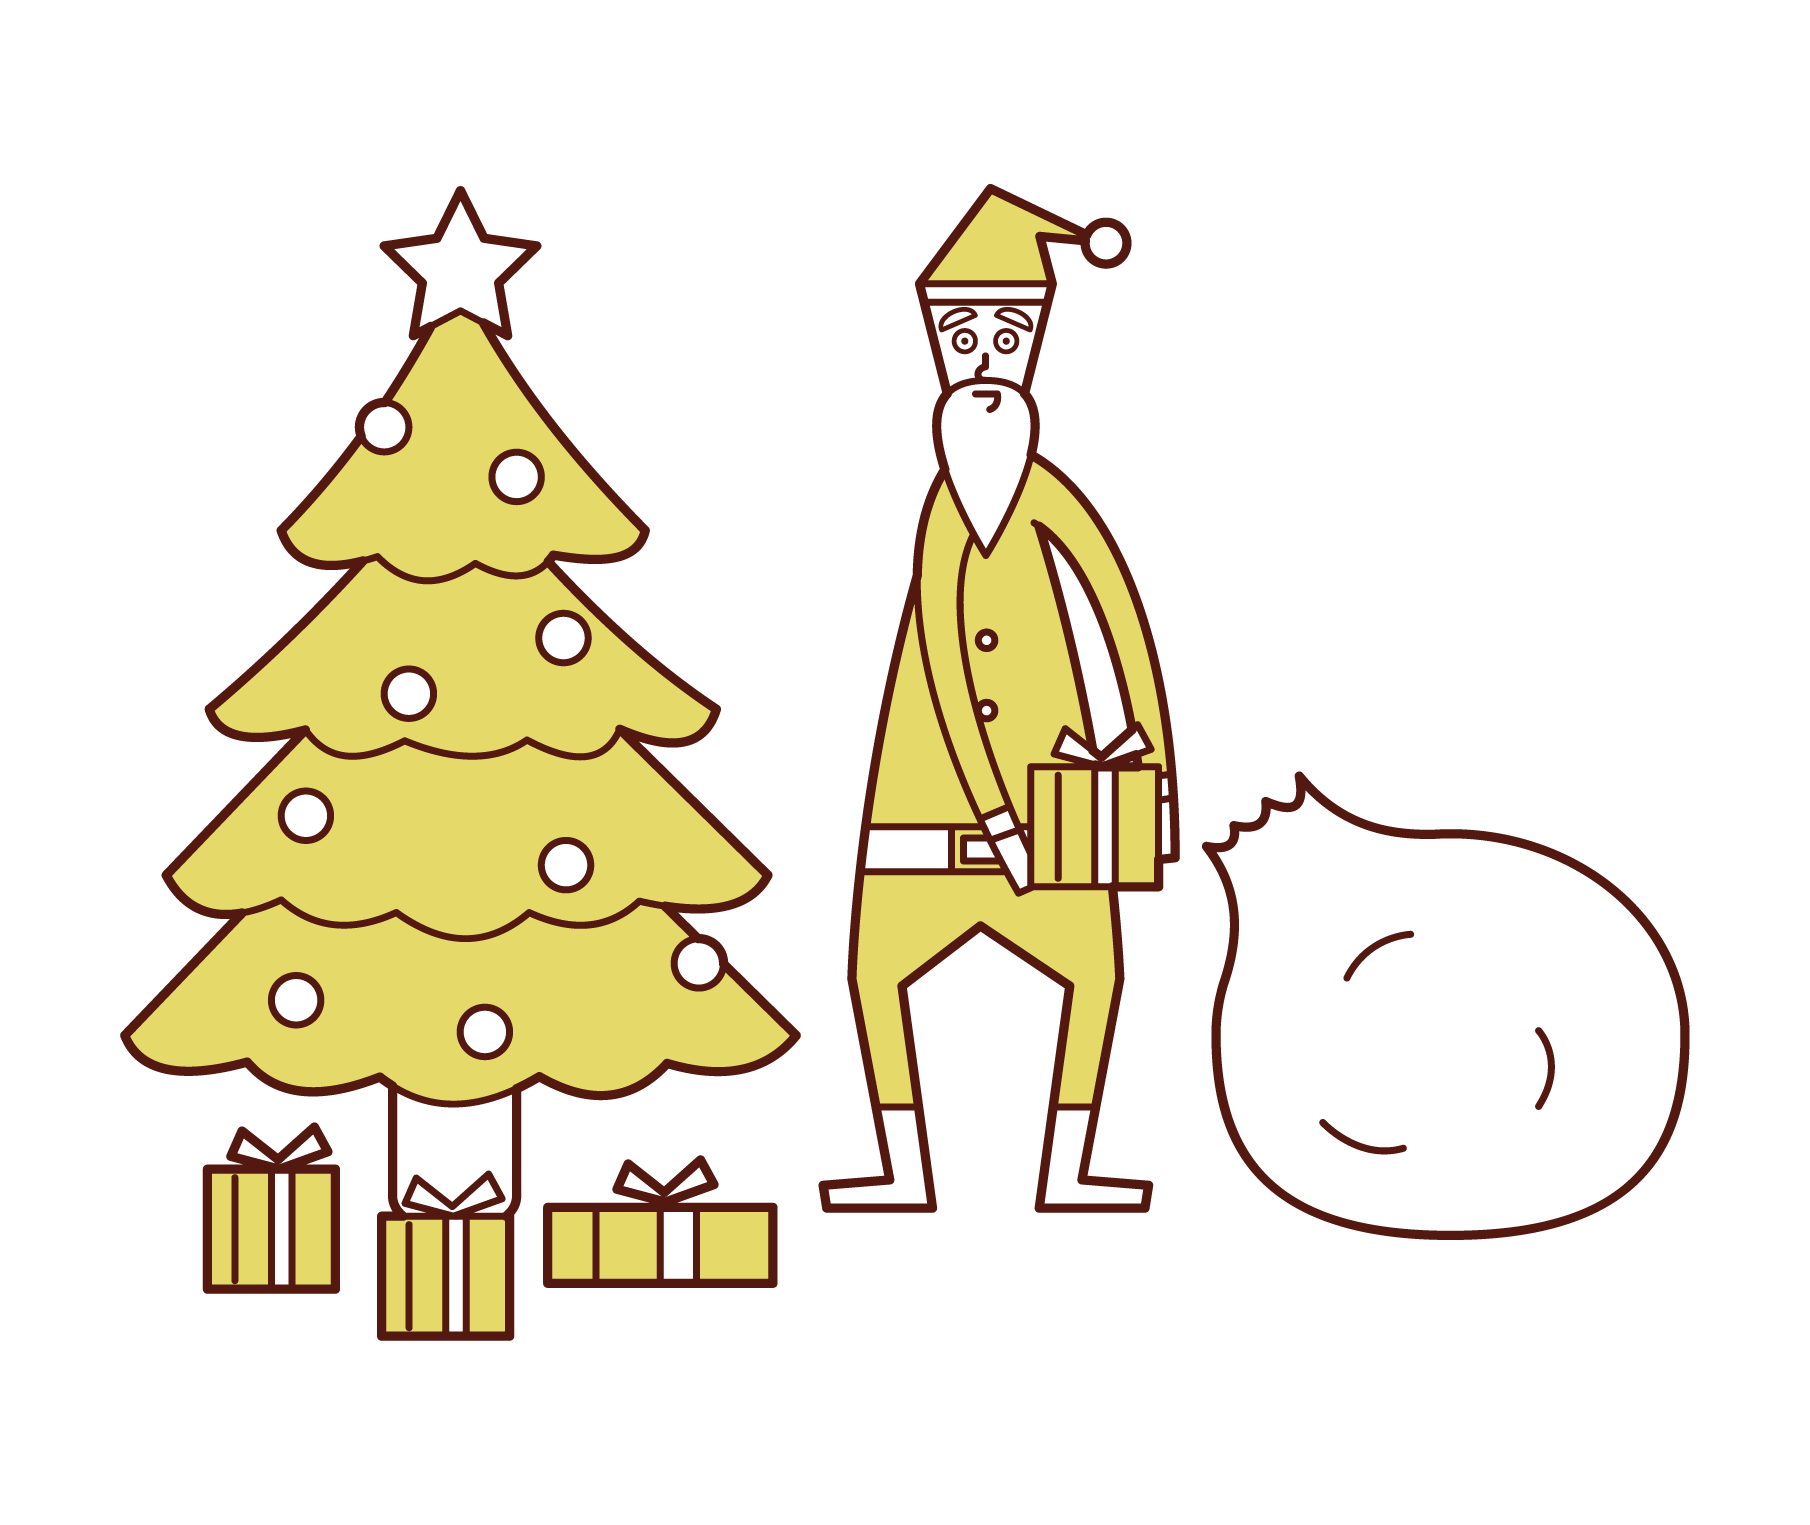 크리스마스 트리 아래에서 선물을 준비하는 산타 클로스 (남성)의 그림